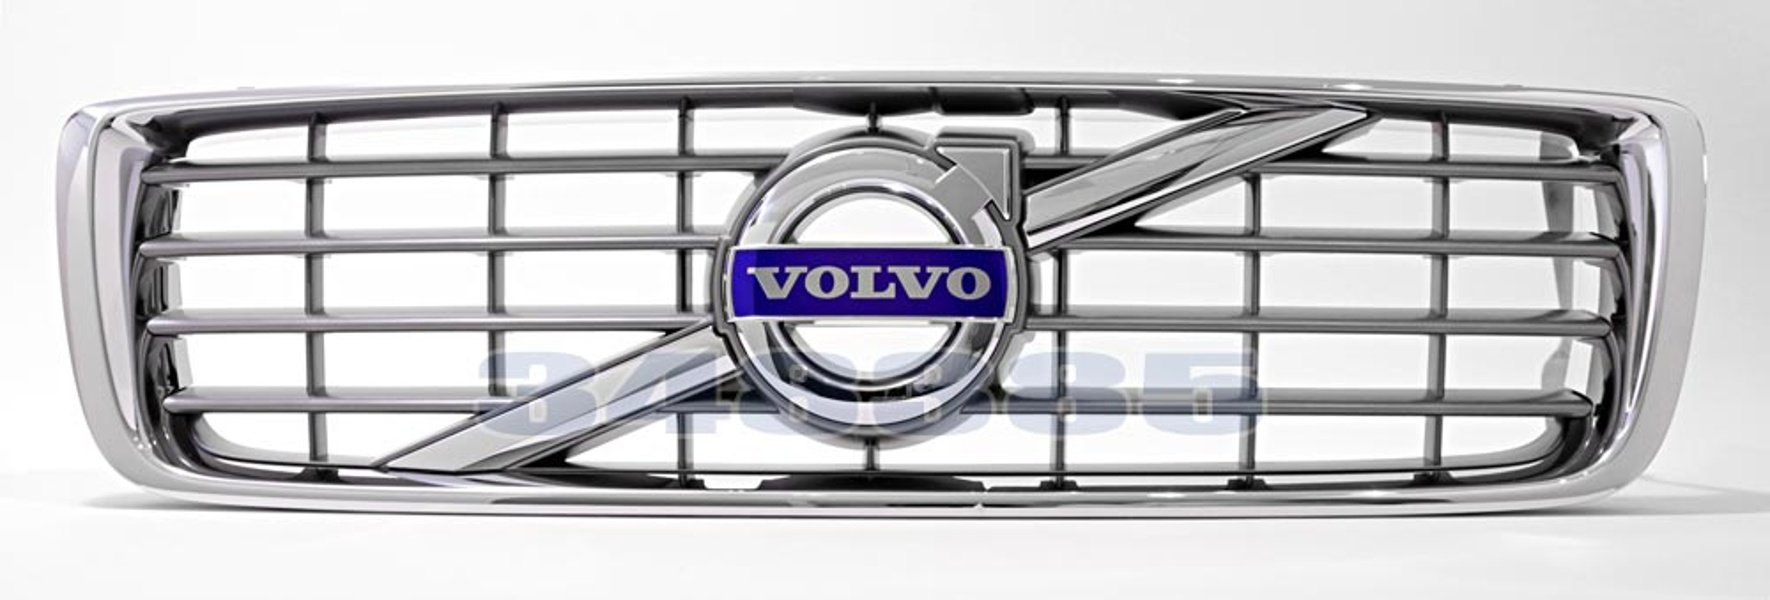 Grill Original Volvo S80 -2010 med Kollisionsvarnare